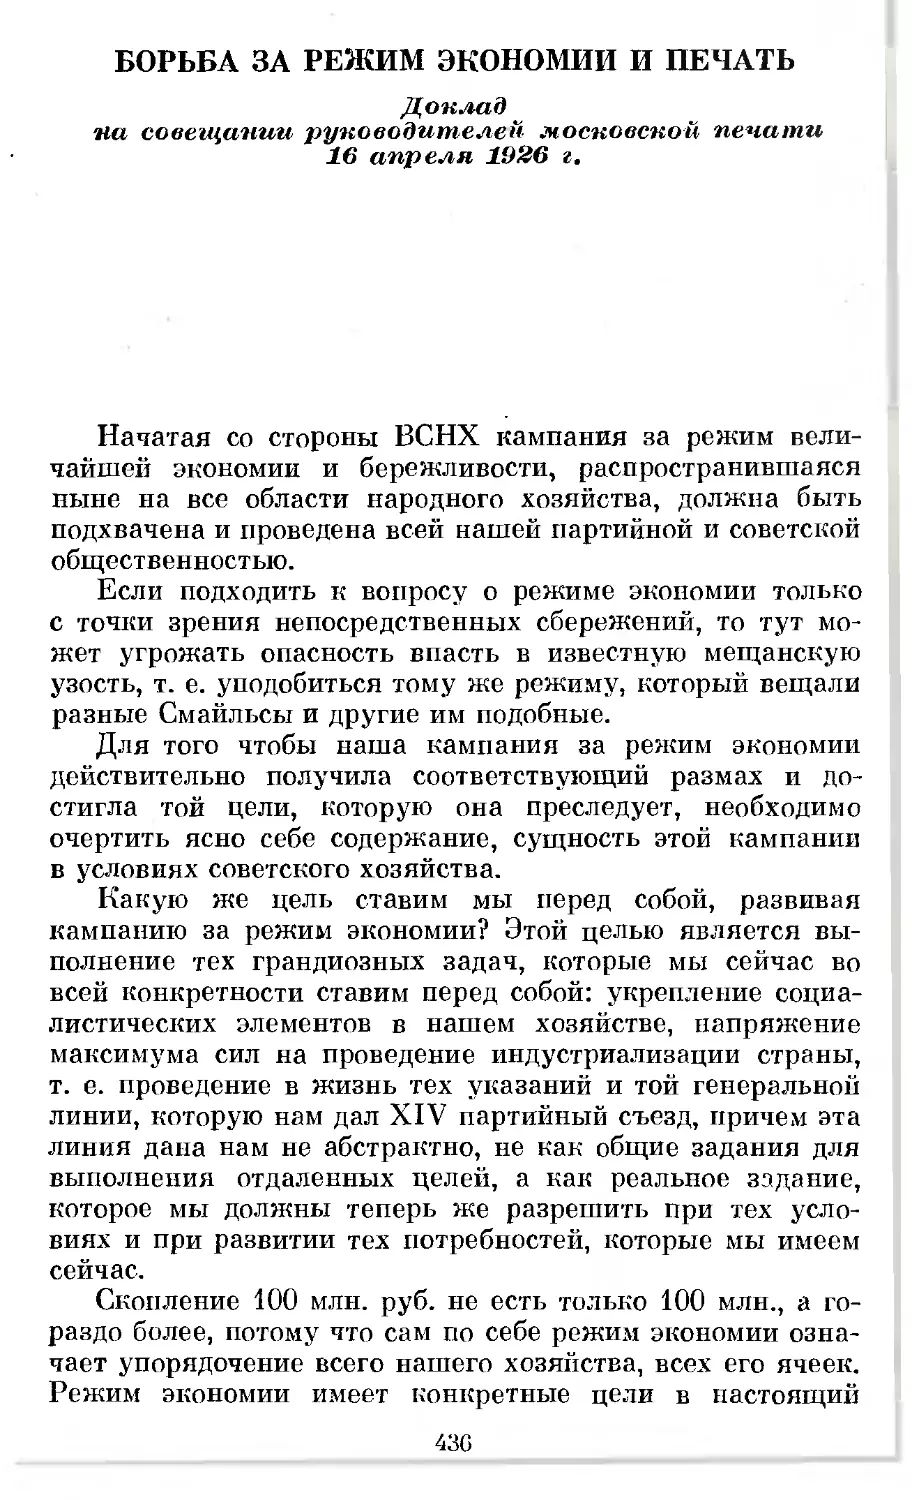 Борьба за режим экономии и печать. Доклад на совещании руководителей московской печати 16 апреля 1926 г